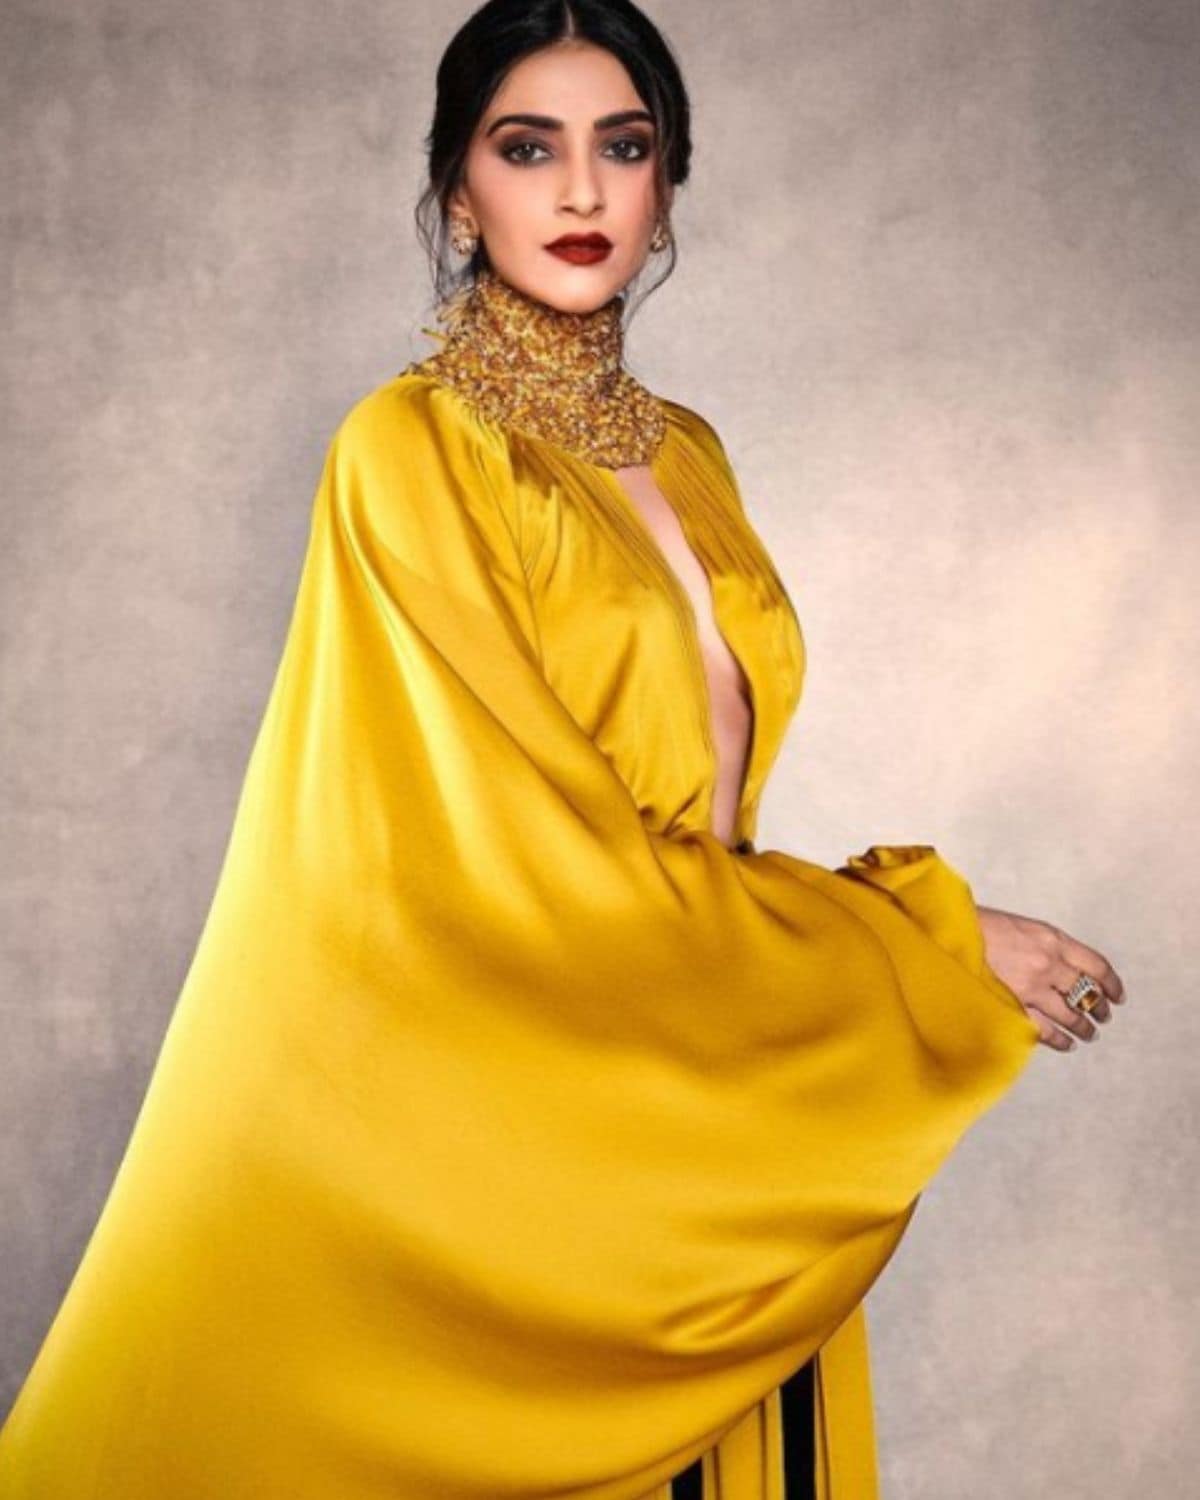 Sonam Kapoor ने अपने नए लुक से सोशल मीडिया पर लगाई आग, Yellow Gown में दिखा स्टनिंग अंदाज - Sonam Kapoor looks stunning in her latest photoshoot in yellow gown photos viral